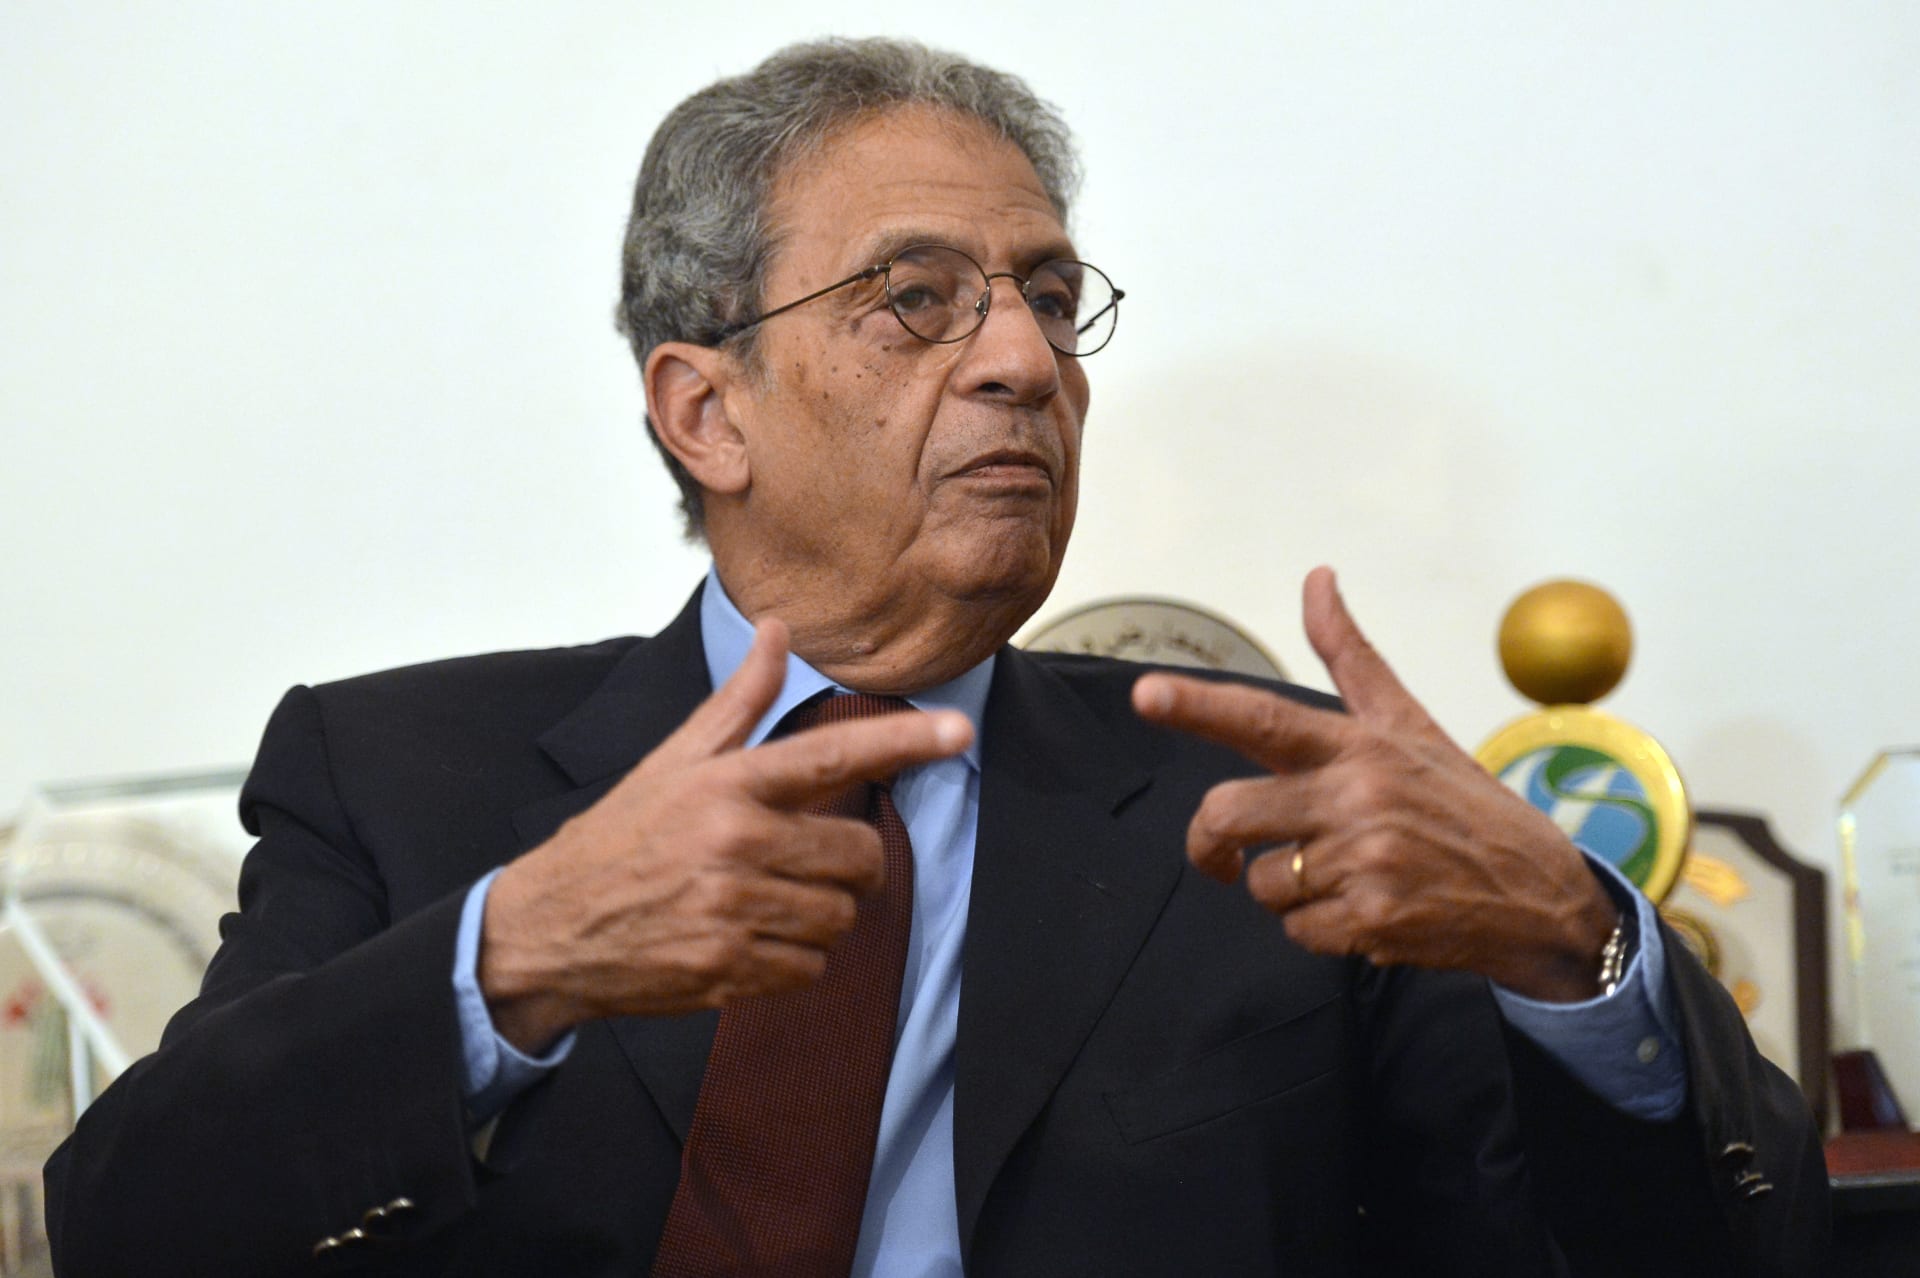 عمرو موسى يتوقع فوز السيسي "بغالبية مريحة لقيادة" مصر